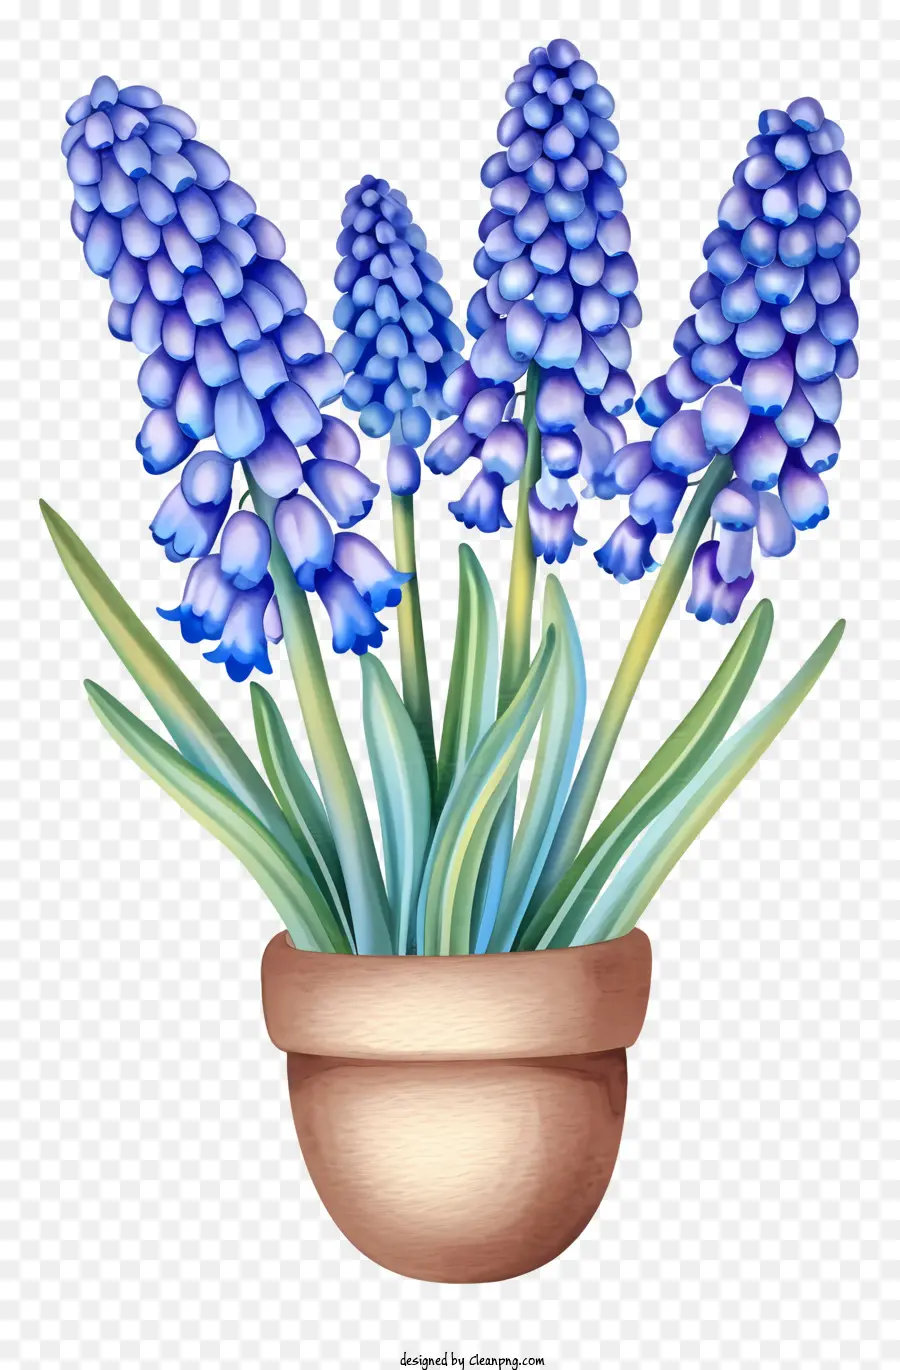 Gesteck - Realistisches Bild von blauen Hyazinthenblüten in der Vase